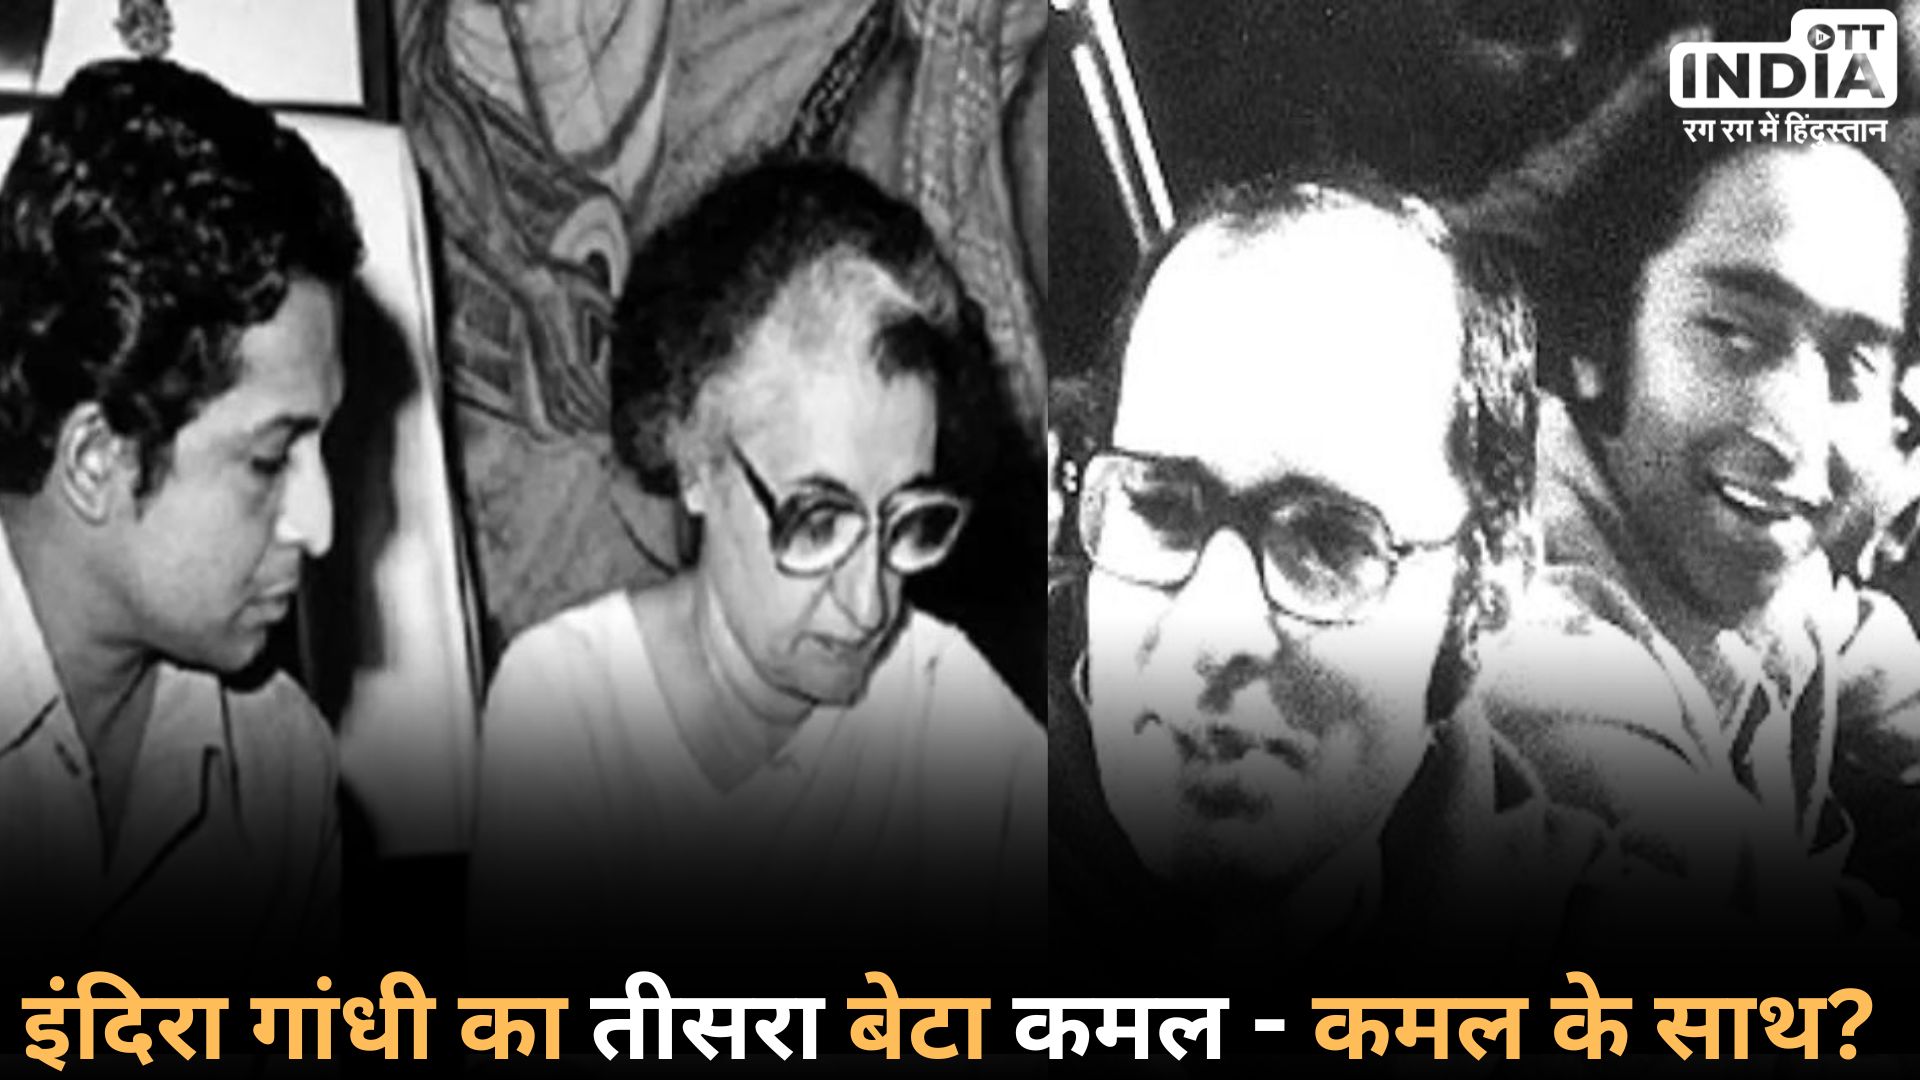 KAMAL NATH: इंदिरा गांधी ने कमल नाथ को क्यों कहा था ‘तीसरा बेटा’! जानिए अब क्यों चर्चा में आई ये बात…